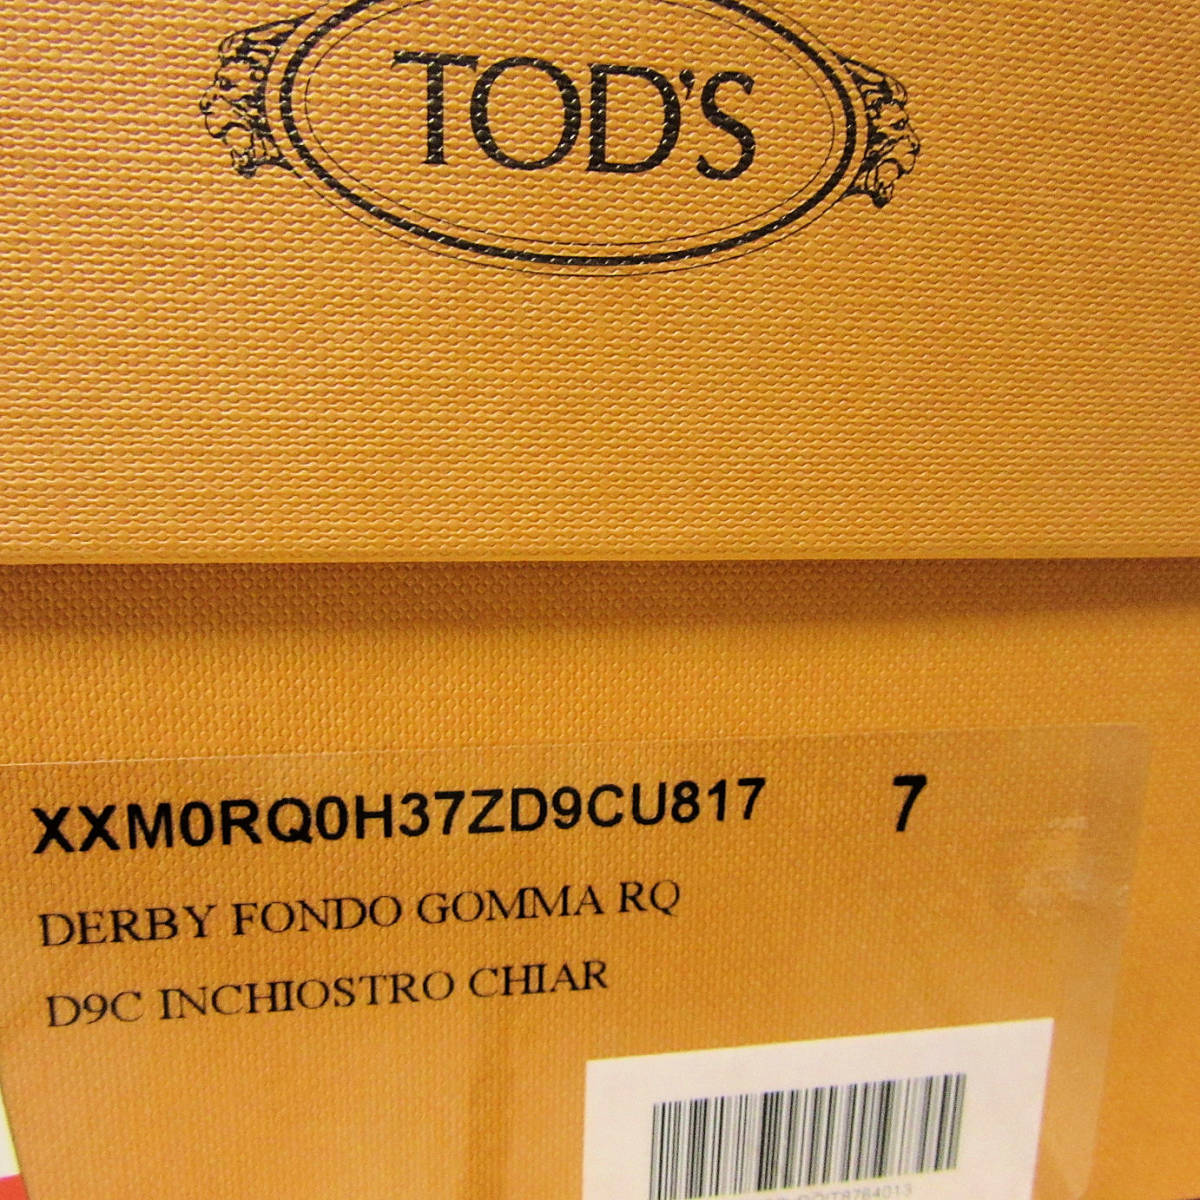 新品箱入り TOD'S トッズ イタリア製 最高級 メンズ ドレスシューズ 革靴 レザーシューズ プレーントゥ ブルー グレー 青 UK7 26cm